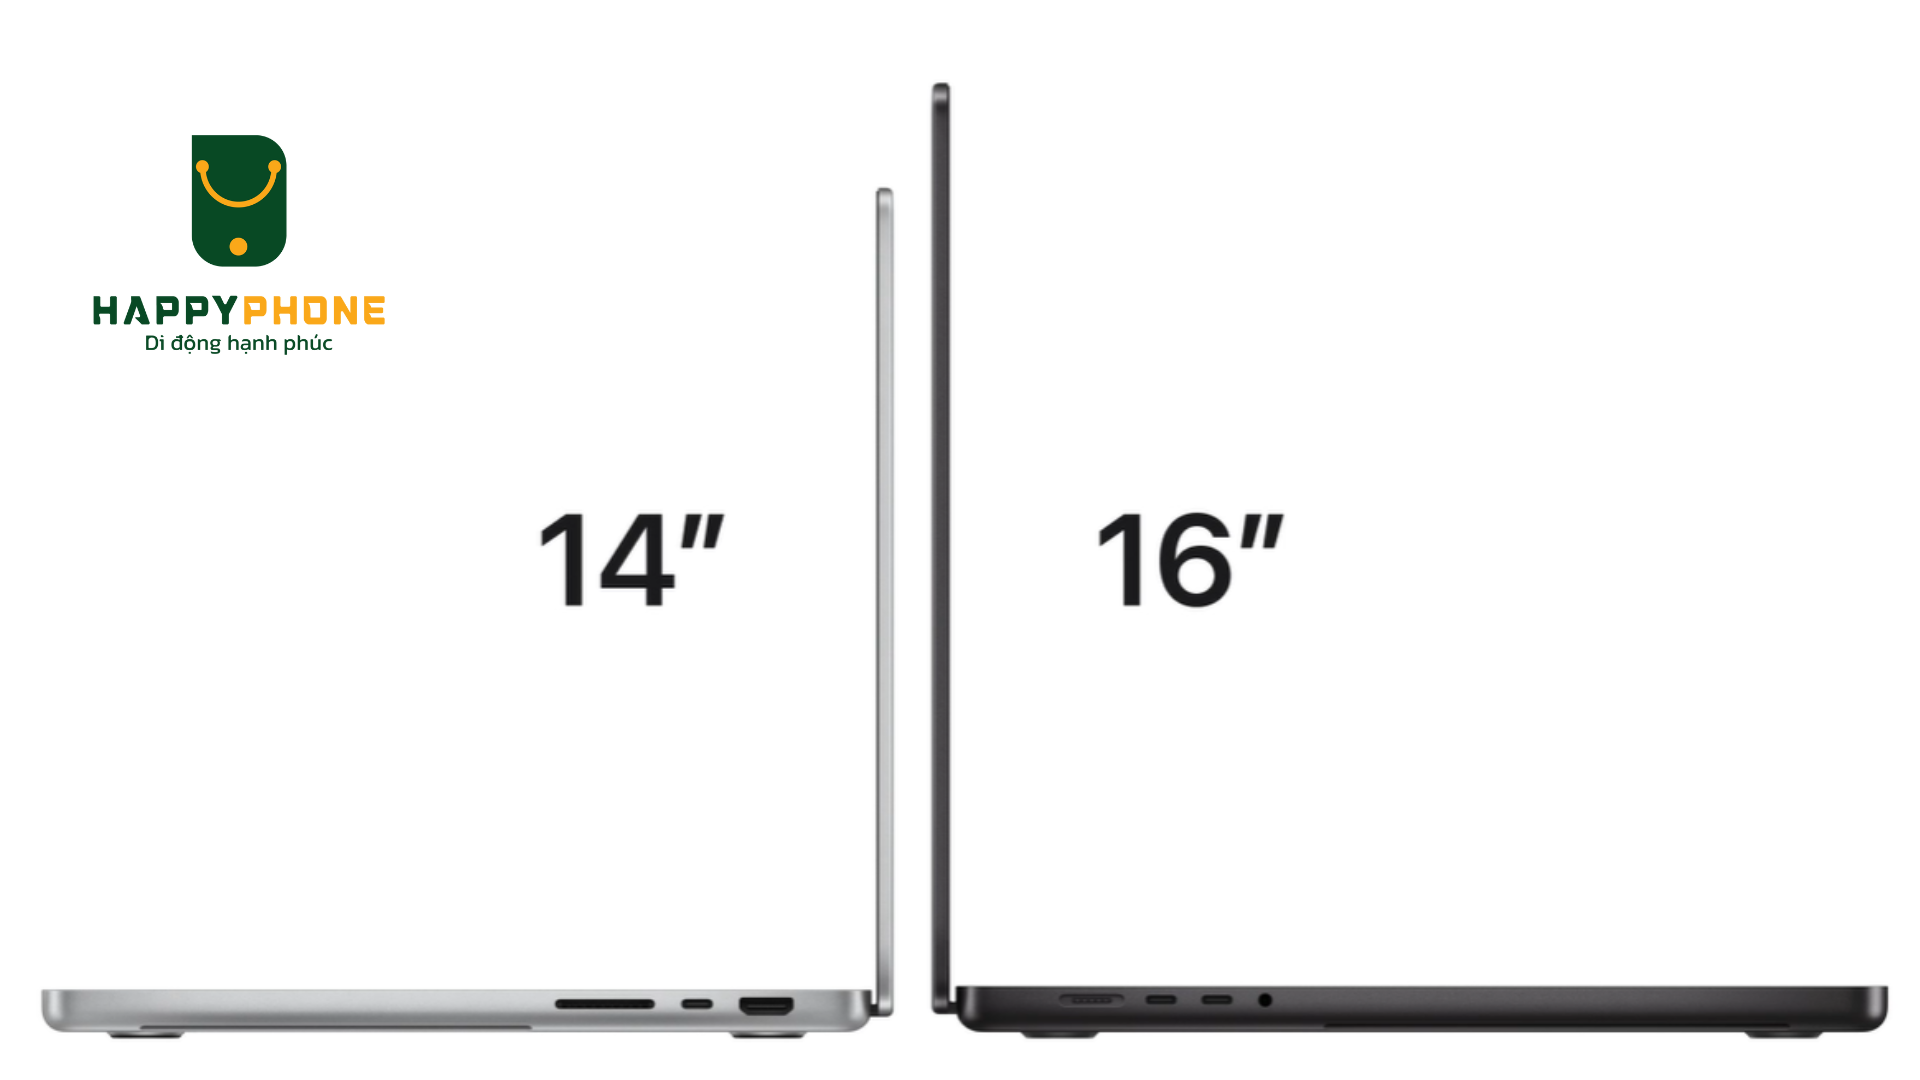 Macbook Pro M4 sẽ có hai phiên bản tùy chọn kích thước màn hình là 14 inch và 16 inch